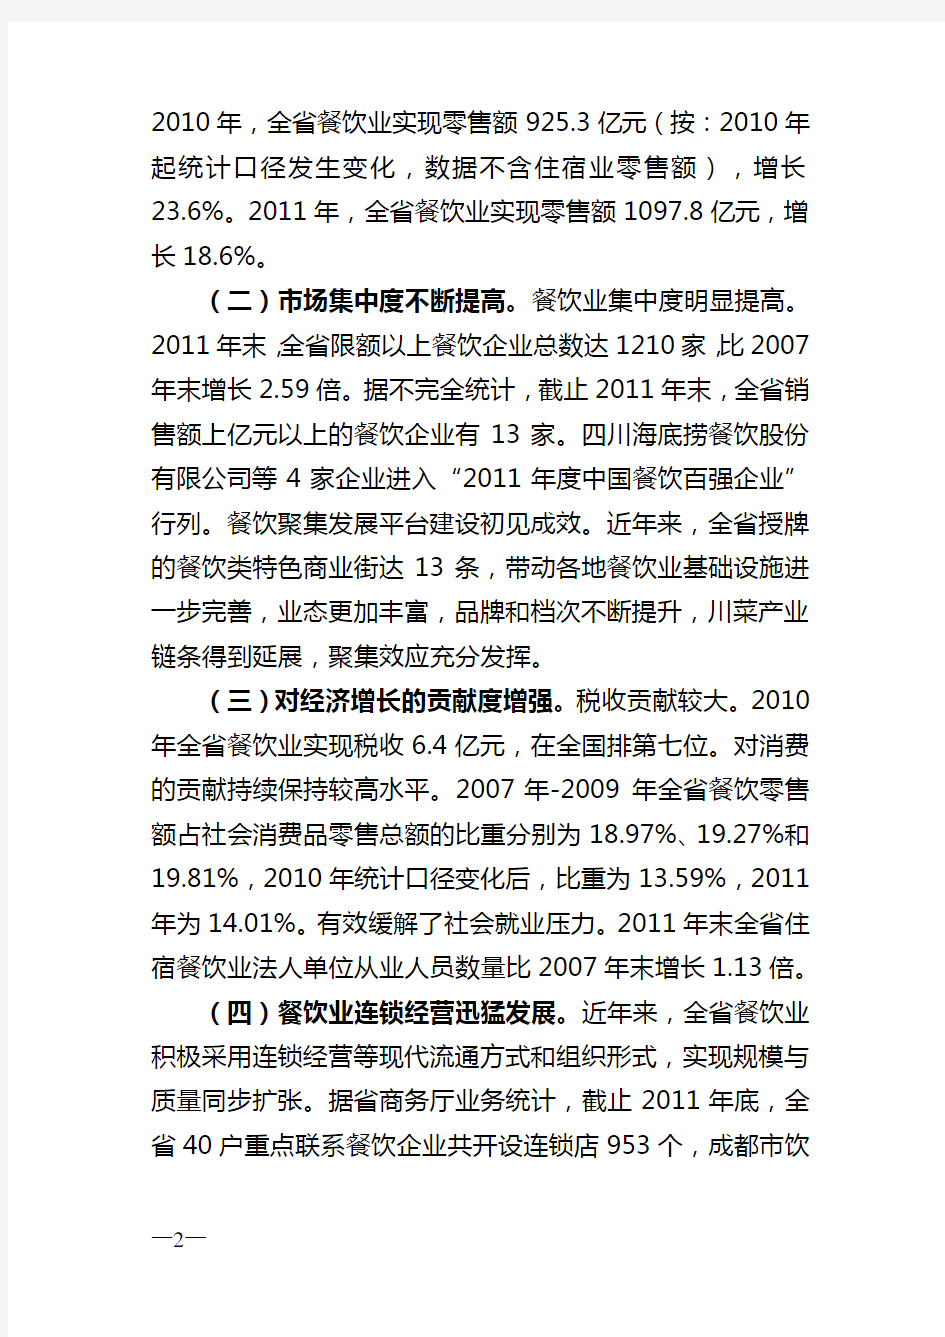 四川省川菜产业发展规划(2013—2015)